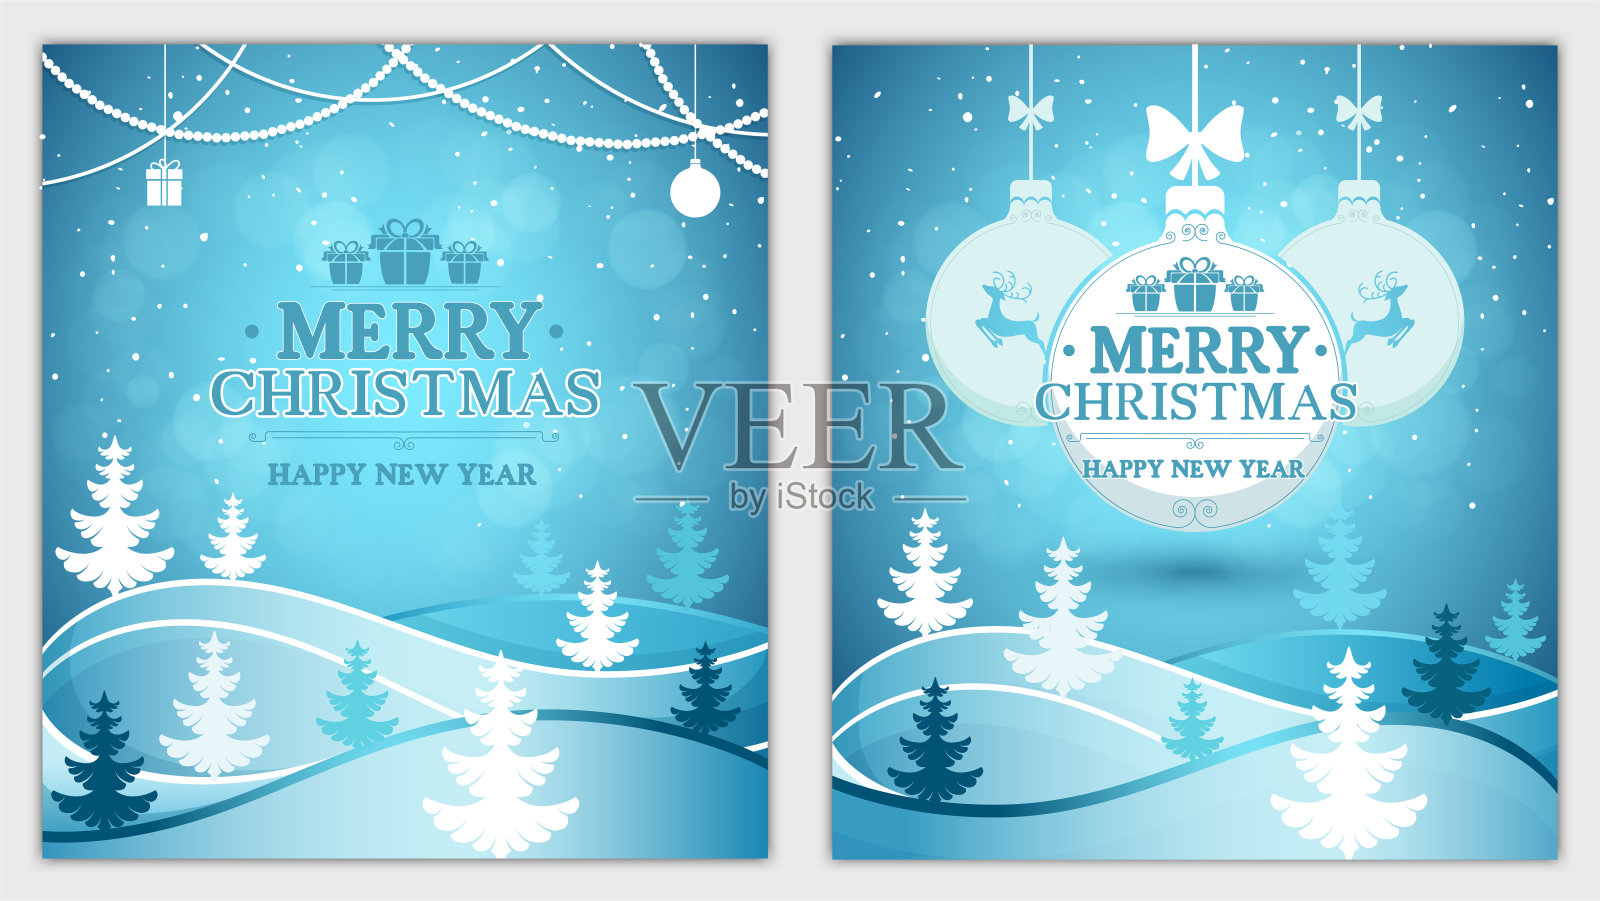 圣诞和新年贺卡的背景是冬季森林景观和降雪矢量插画设计模板素材